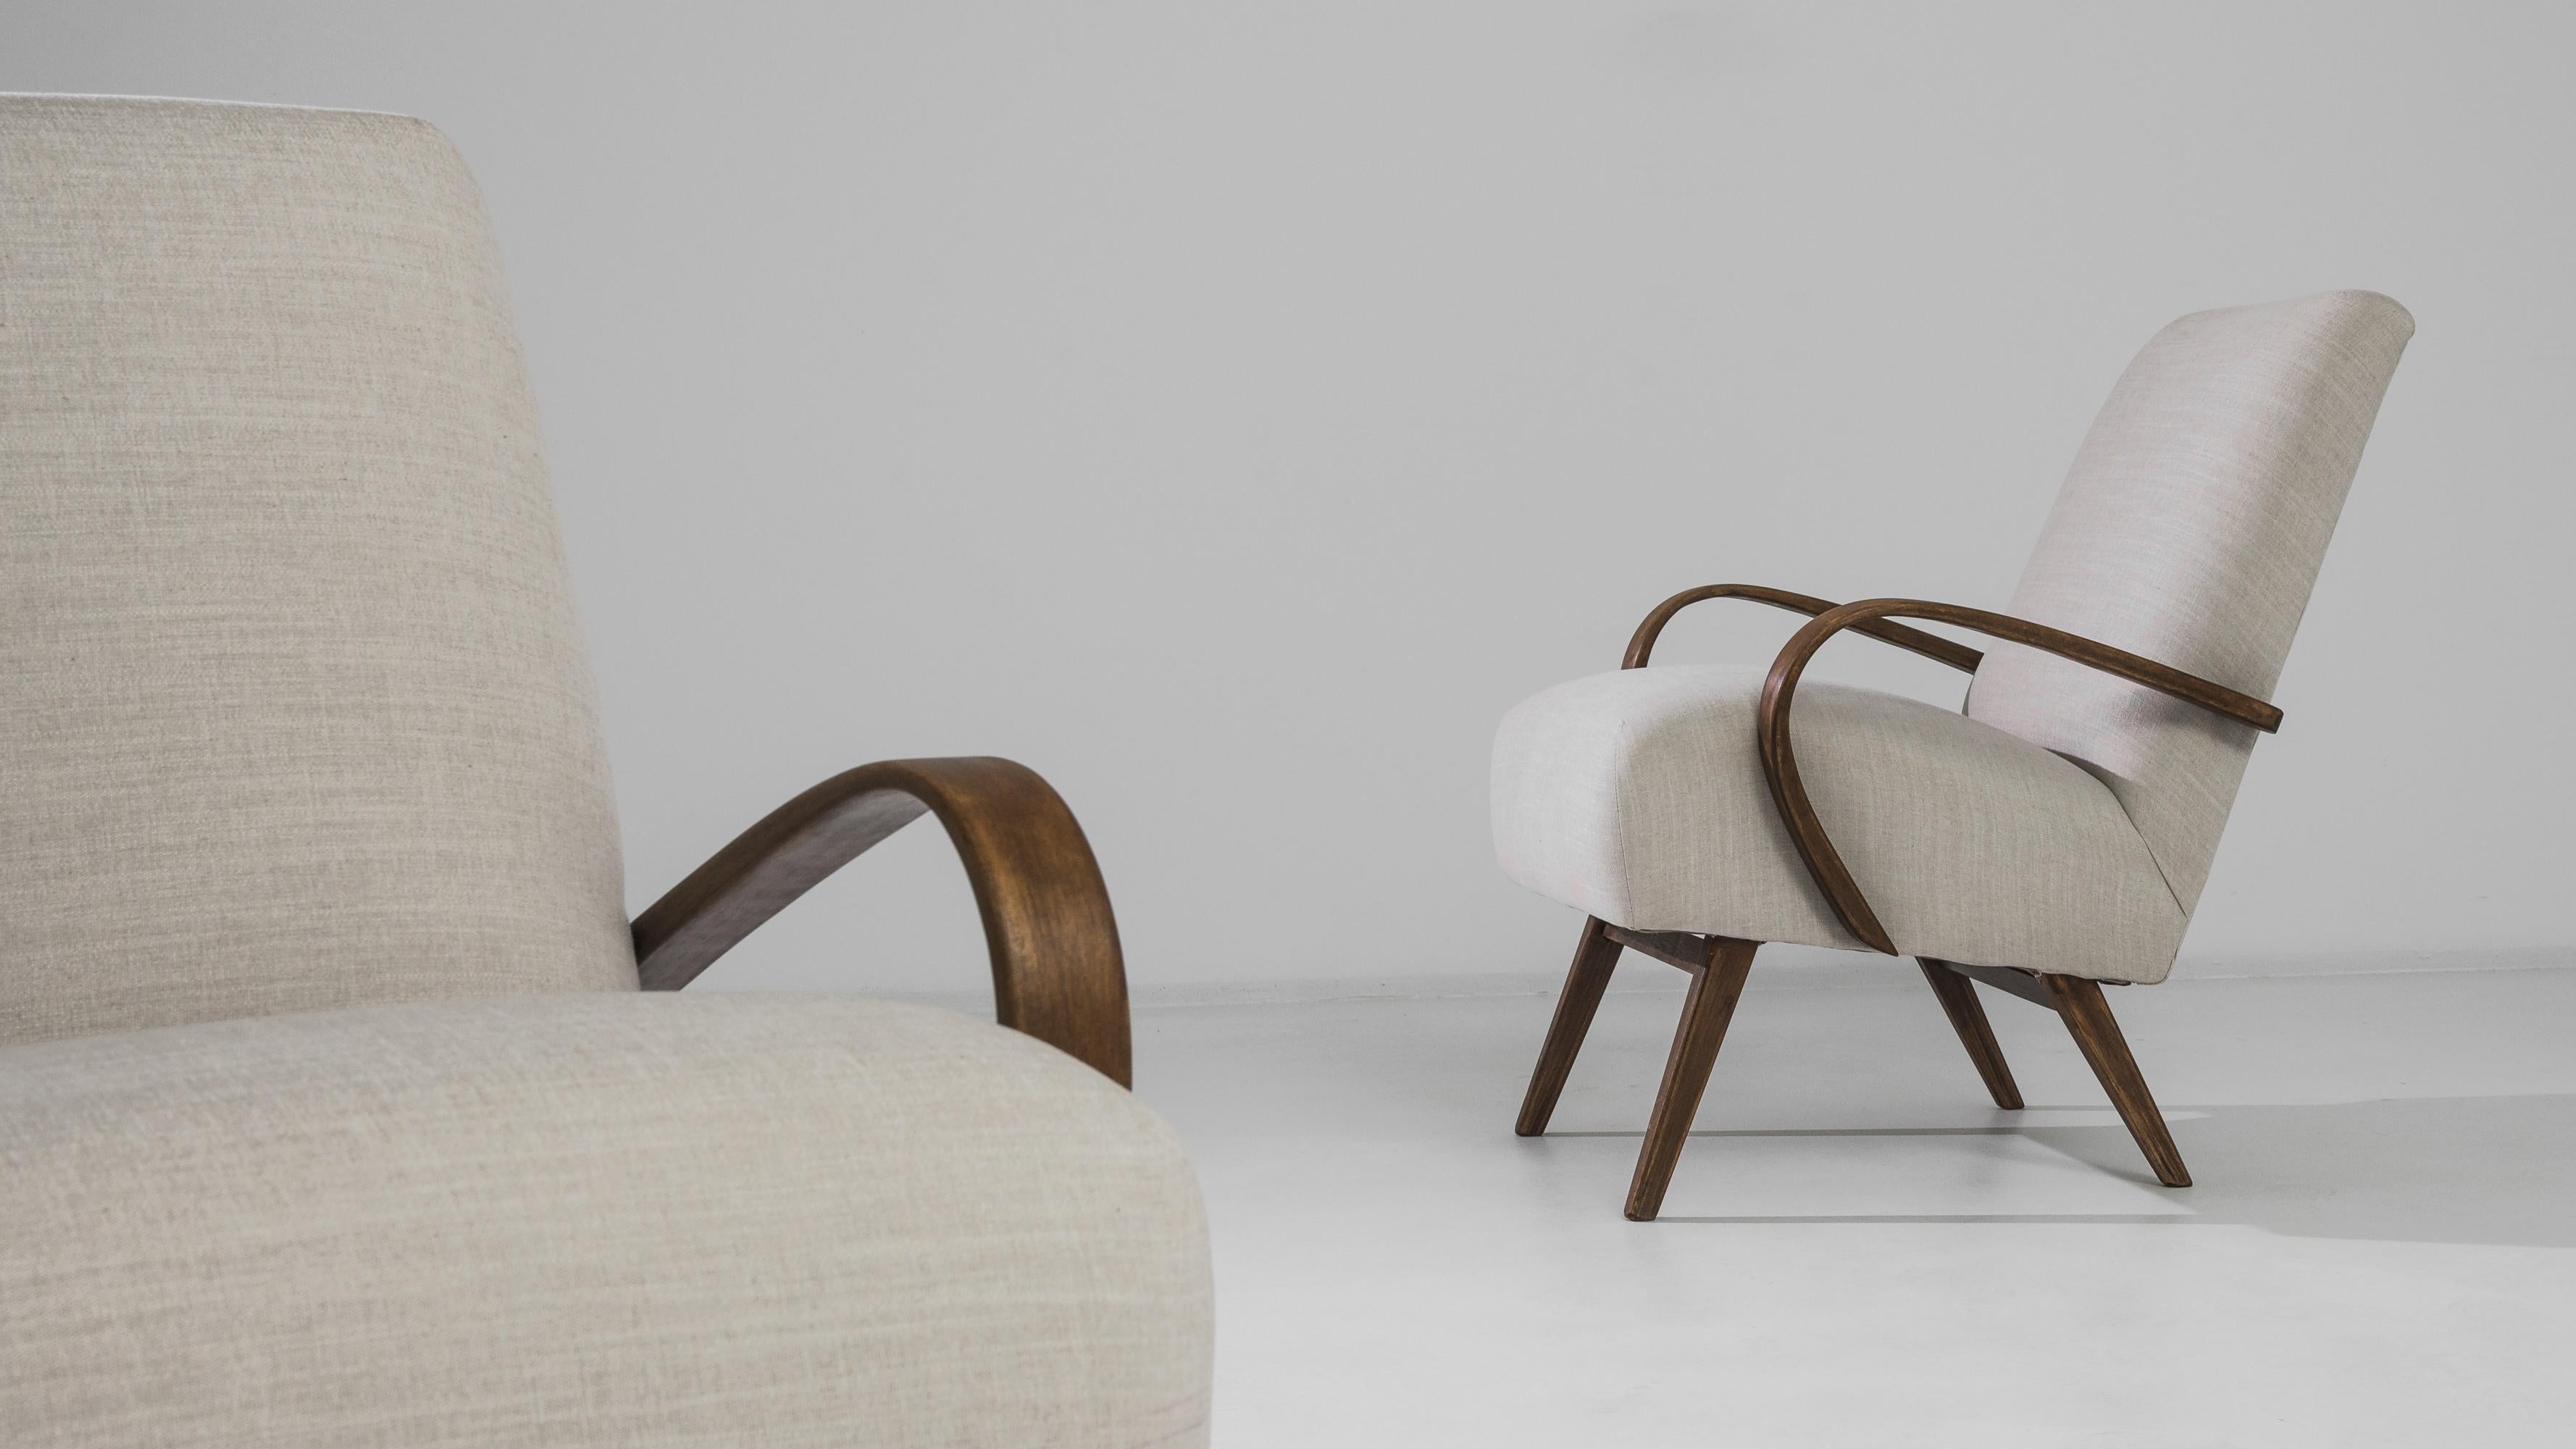 Ein Paar gepolsterte Sessel des tschechischen Möbeldesigners J. Halabala. Die auffällige Silhouette und das bequeme Design, das in den 1950er Jahren entwickelt wurde, haben einen bleibenden Reiz. Der tief gepolsterte Sitz auf geschwungenen Holzfüßen